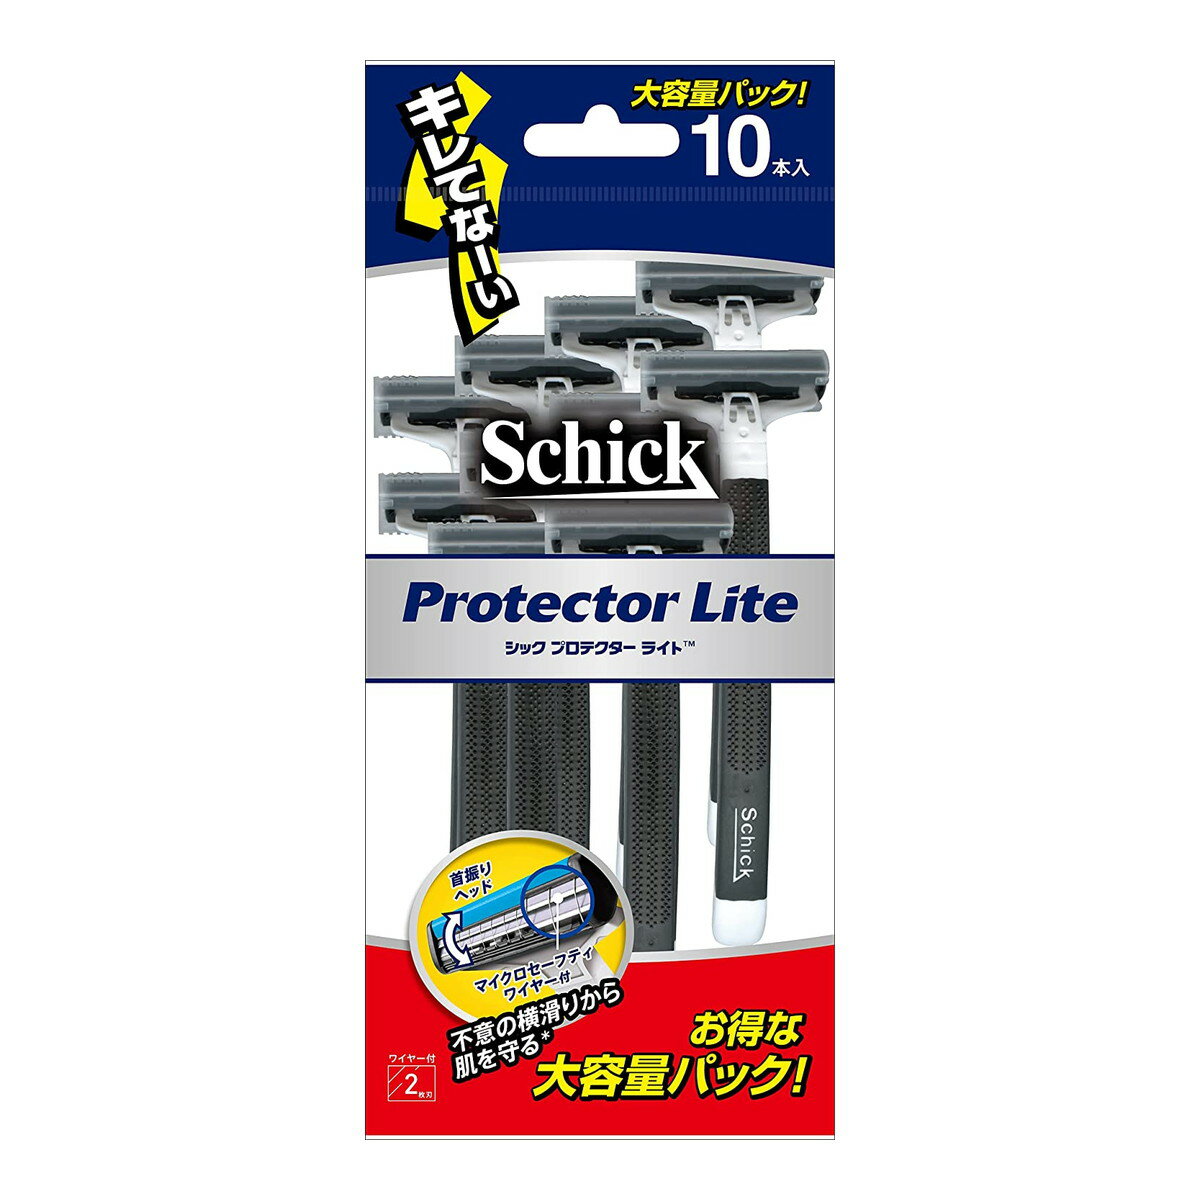 【送料込】 シック・ジャパン Schick シック プロテクターライト 10本入 1個